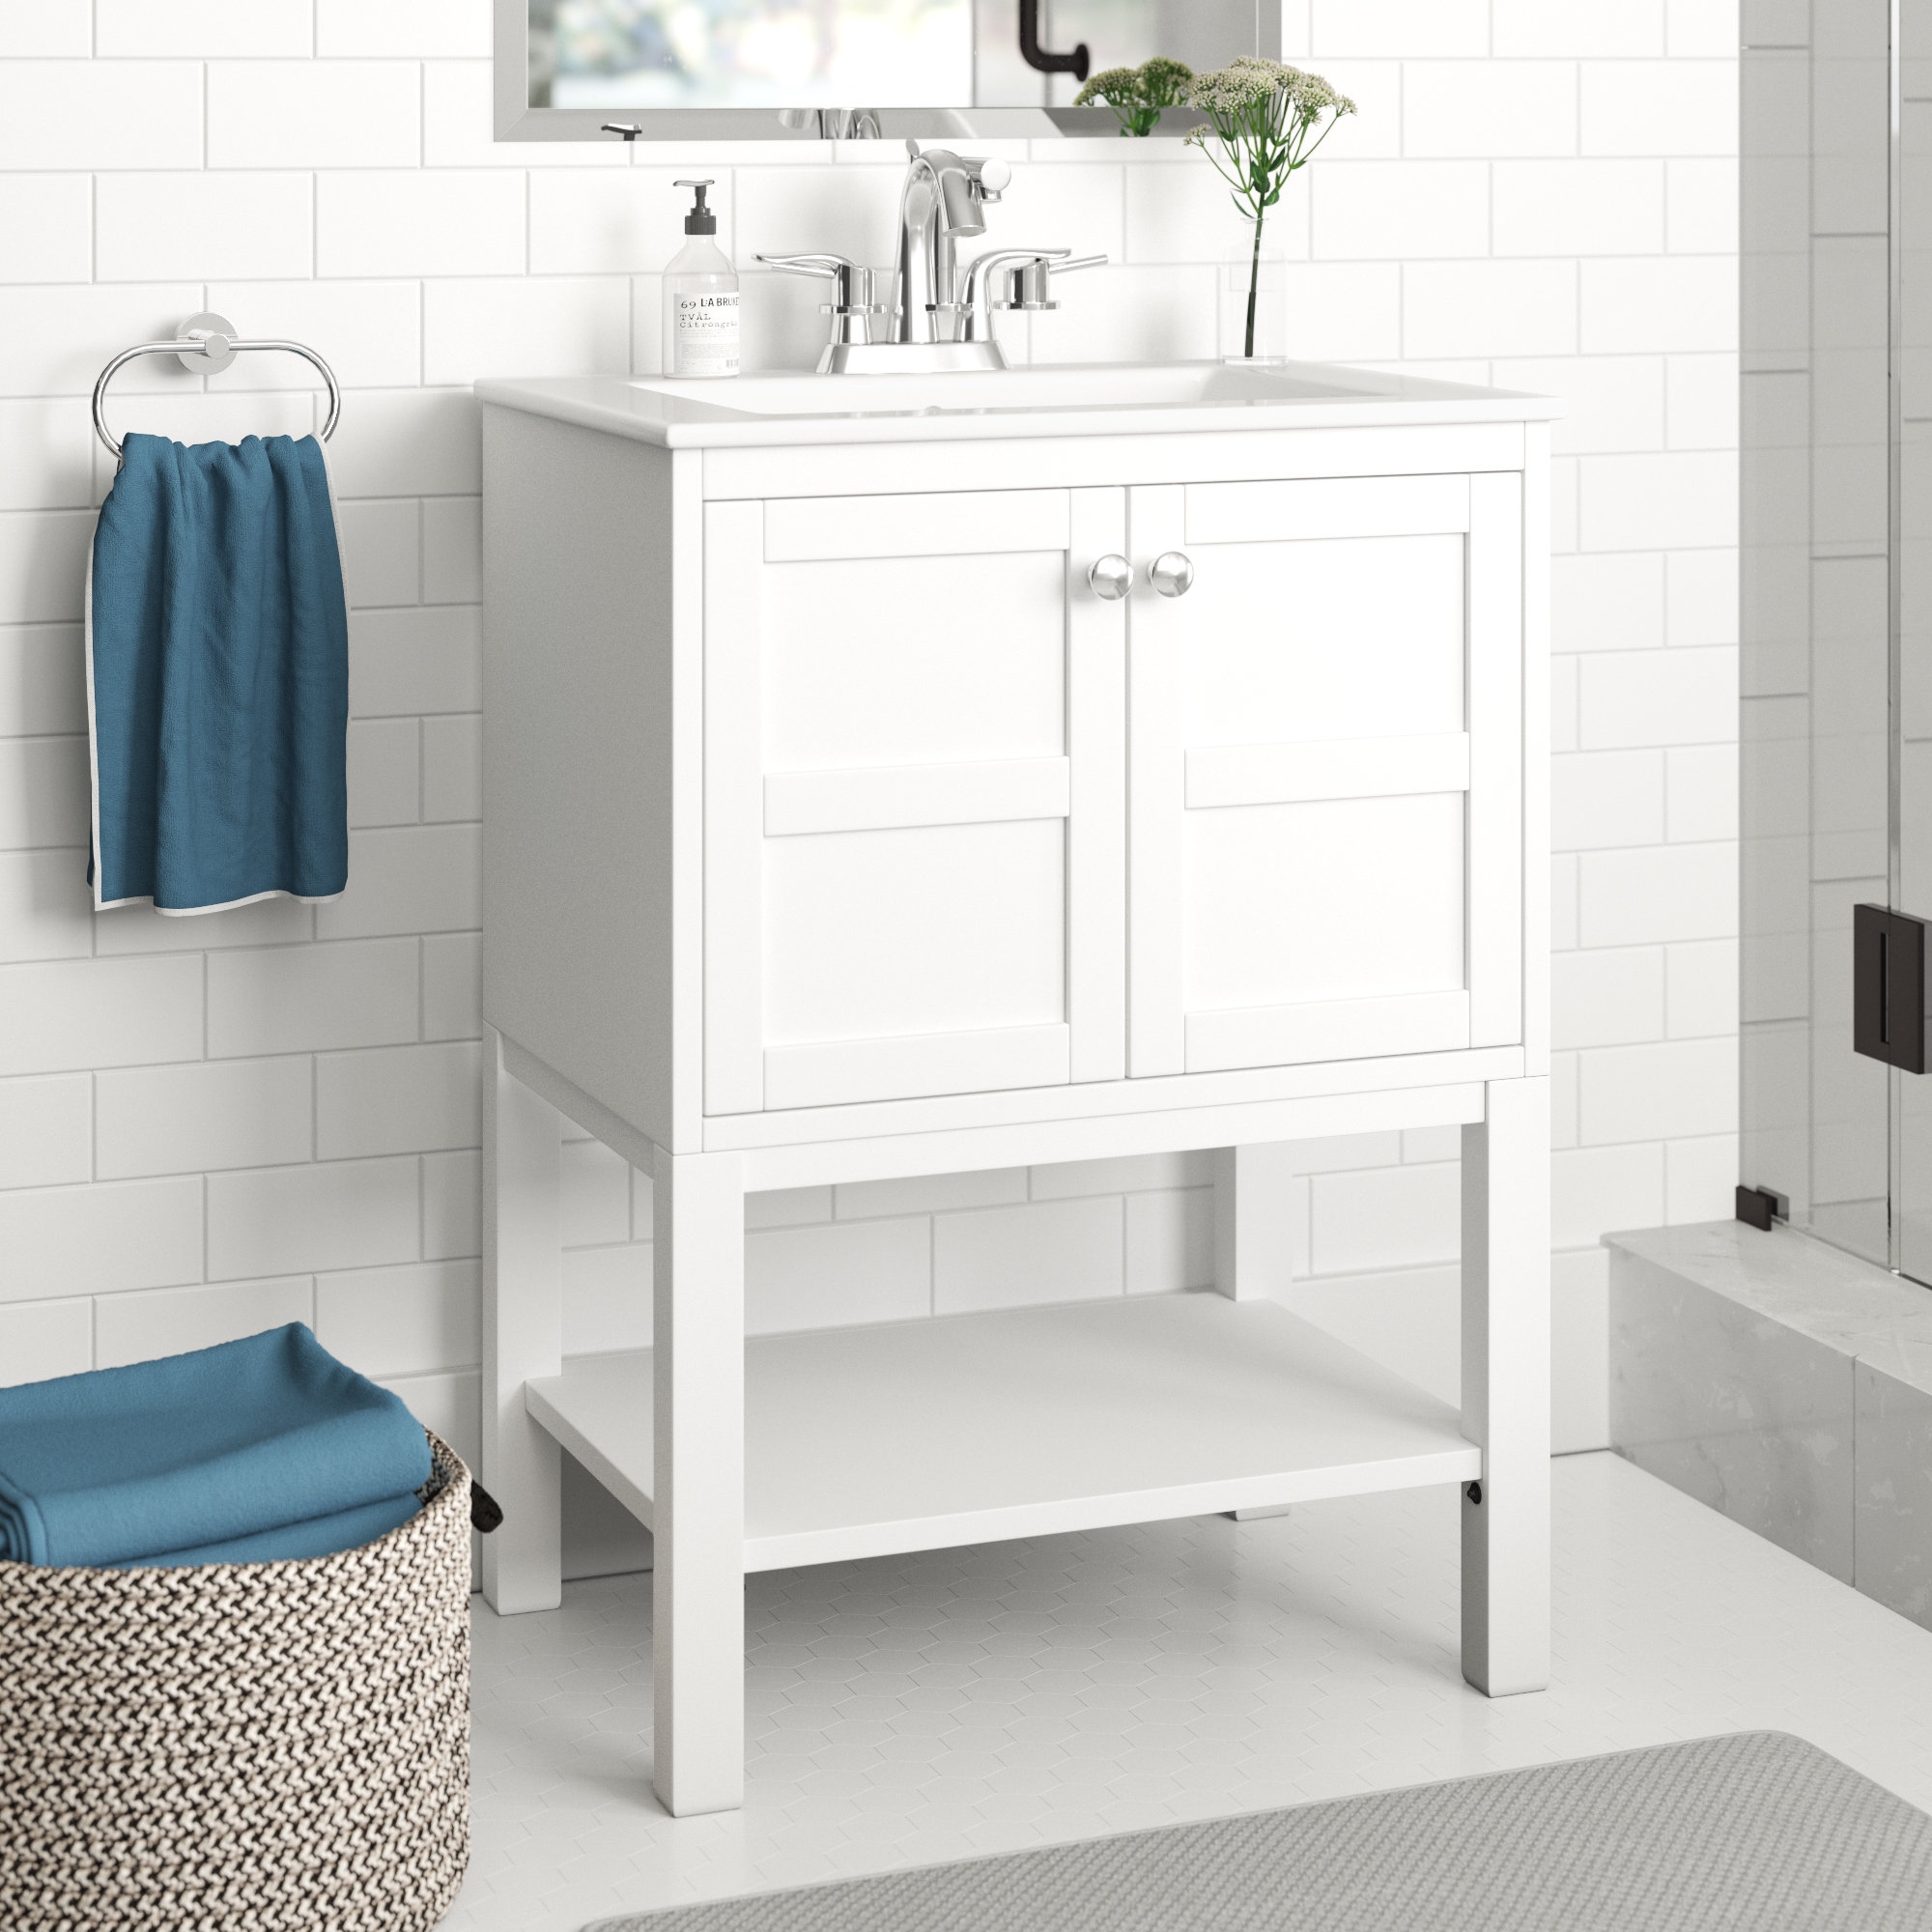 Zipcode Design Clinchport 24 Single Bathroom Vanity Set Reviews Wayfair